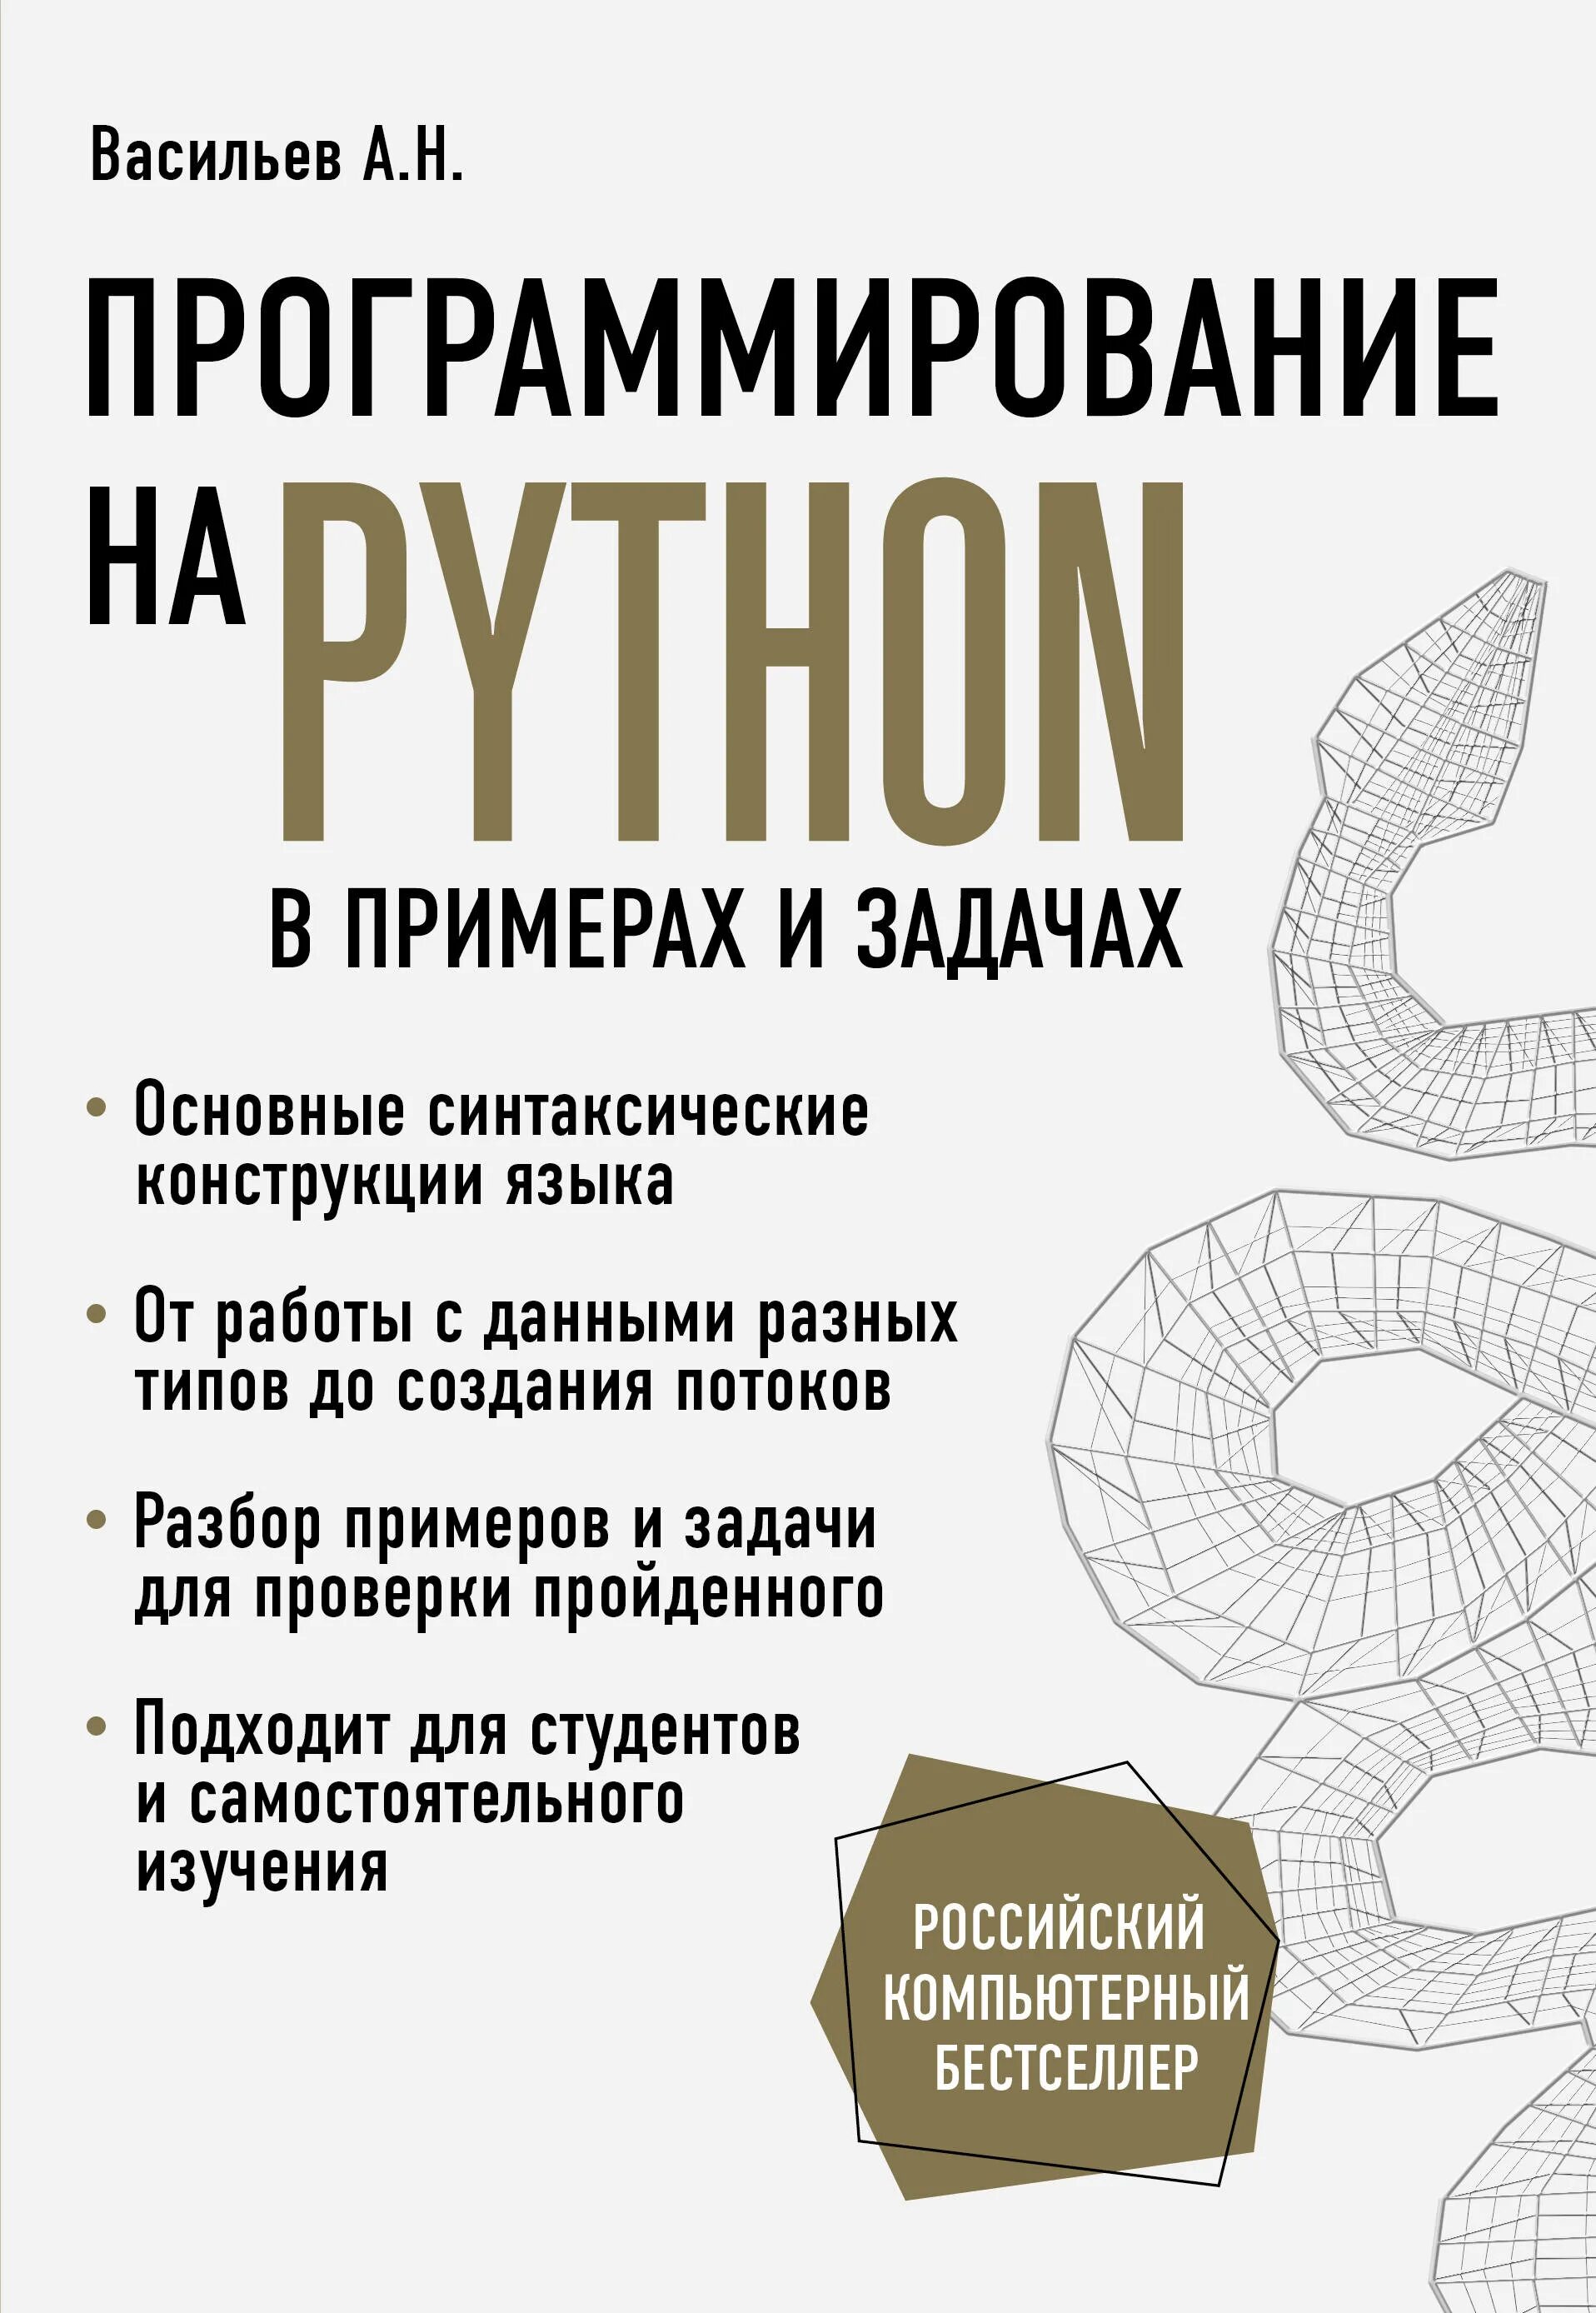 Питон книга программирование. Васильев а н программирование. Программирование на Python книга. Васильев а н программирование на Python.